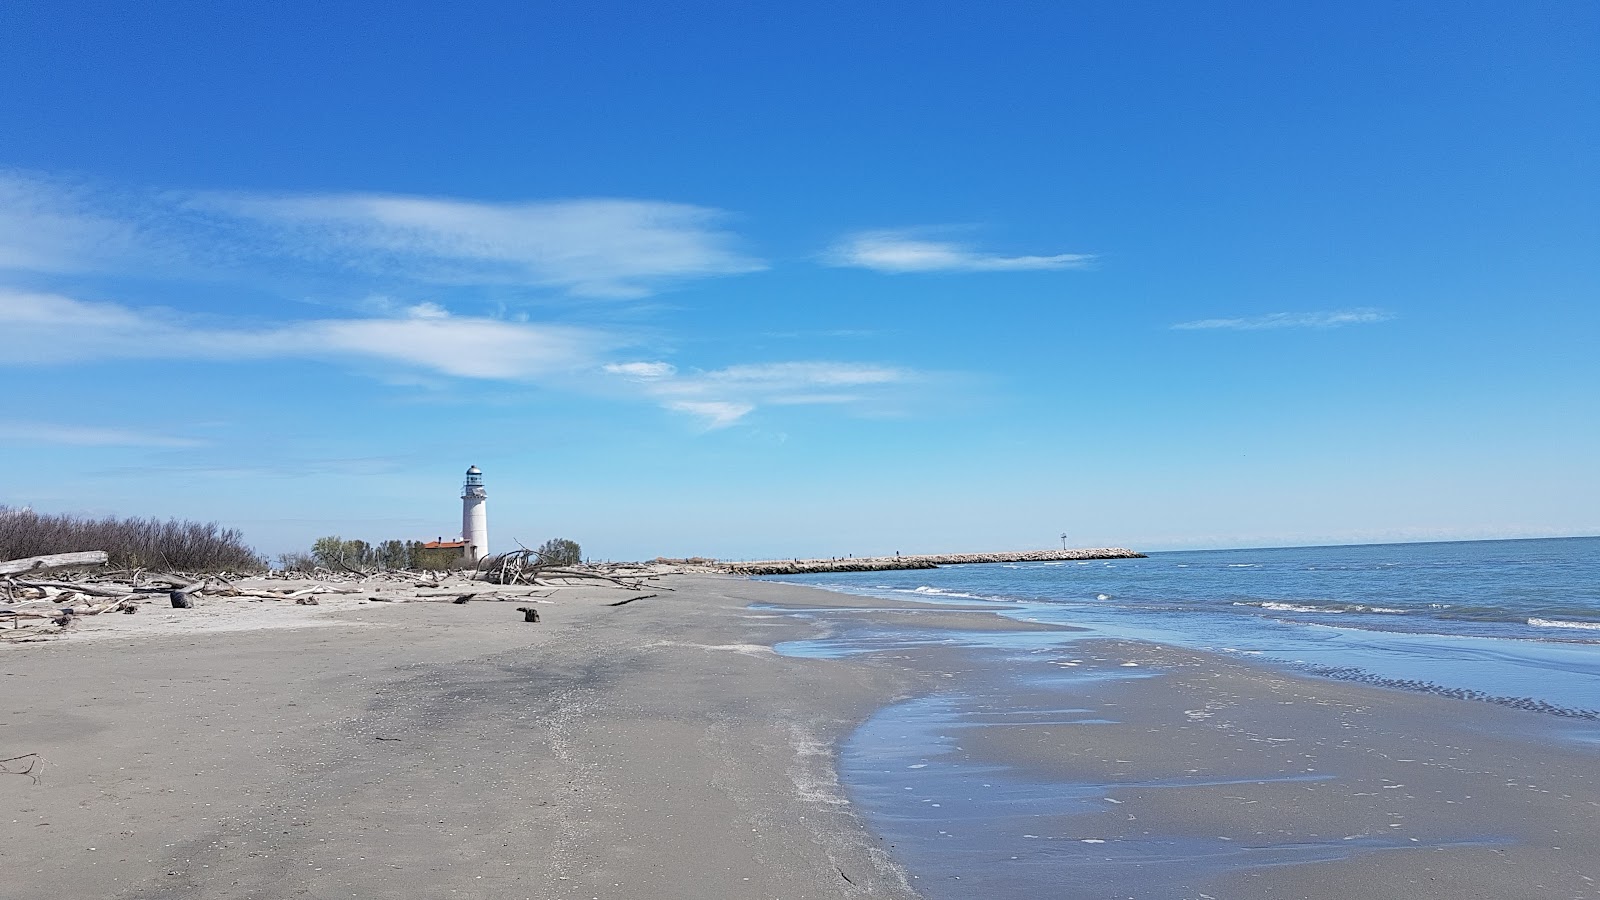 Foto av Spiaggia dell'Isola dell'Amore med blått vatten yta